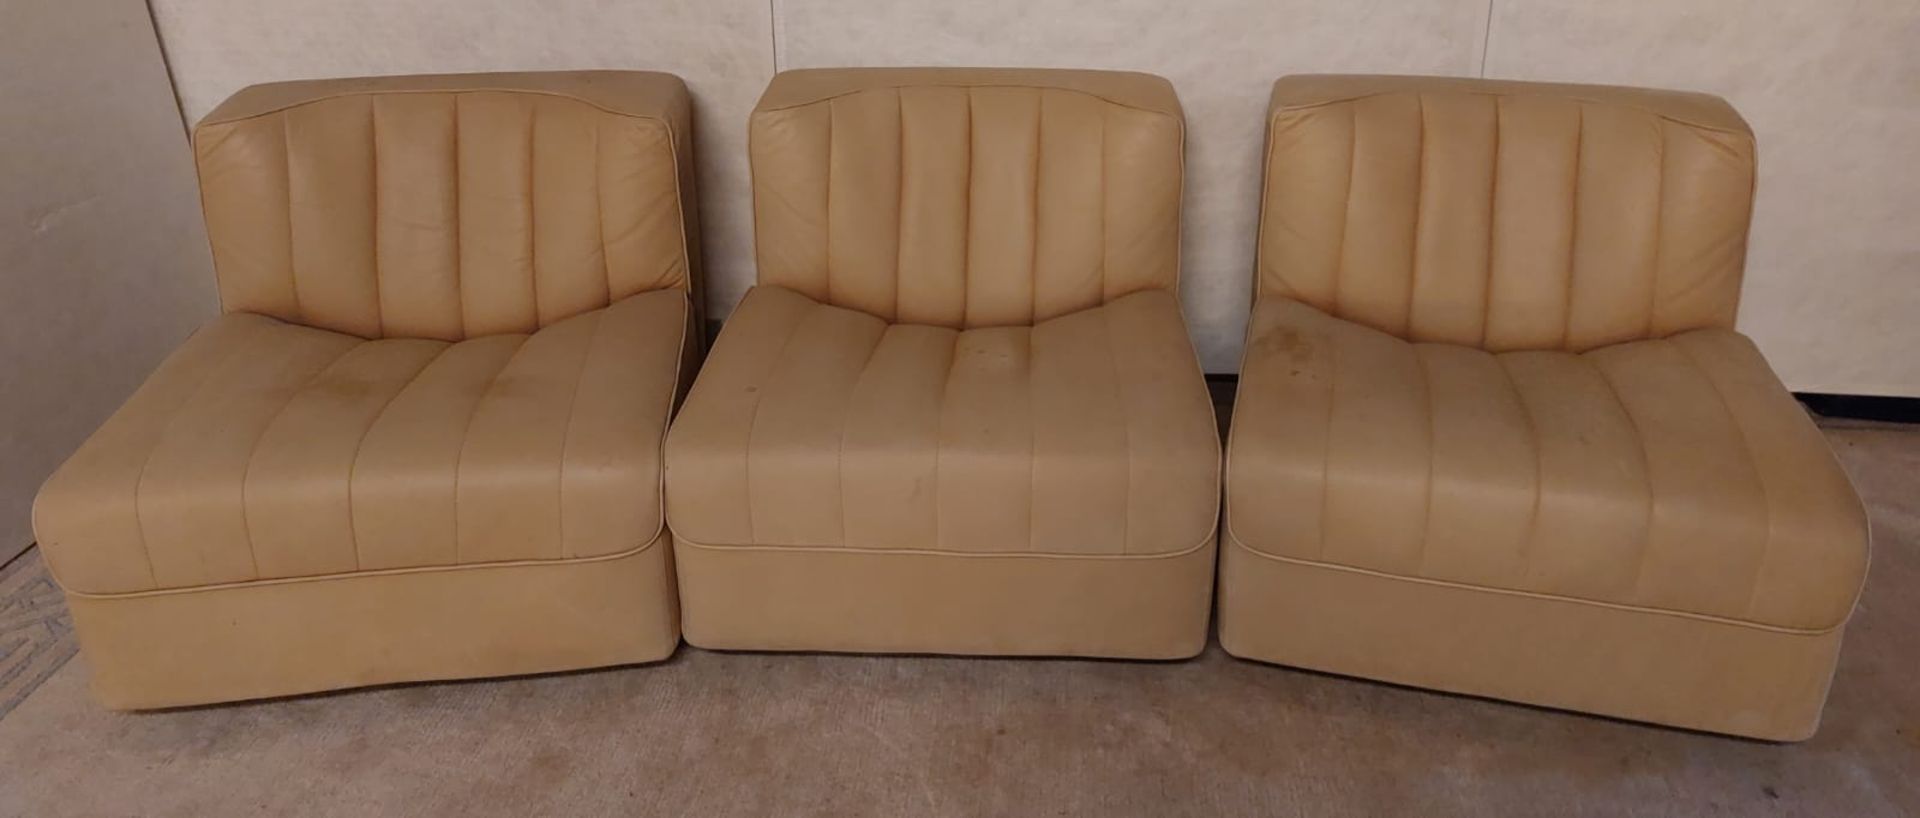 Drei modulare Sessel, Leder, um 1970. - Bild 2 aus 10